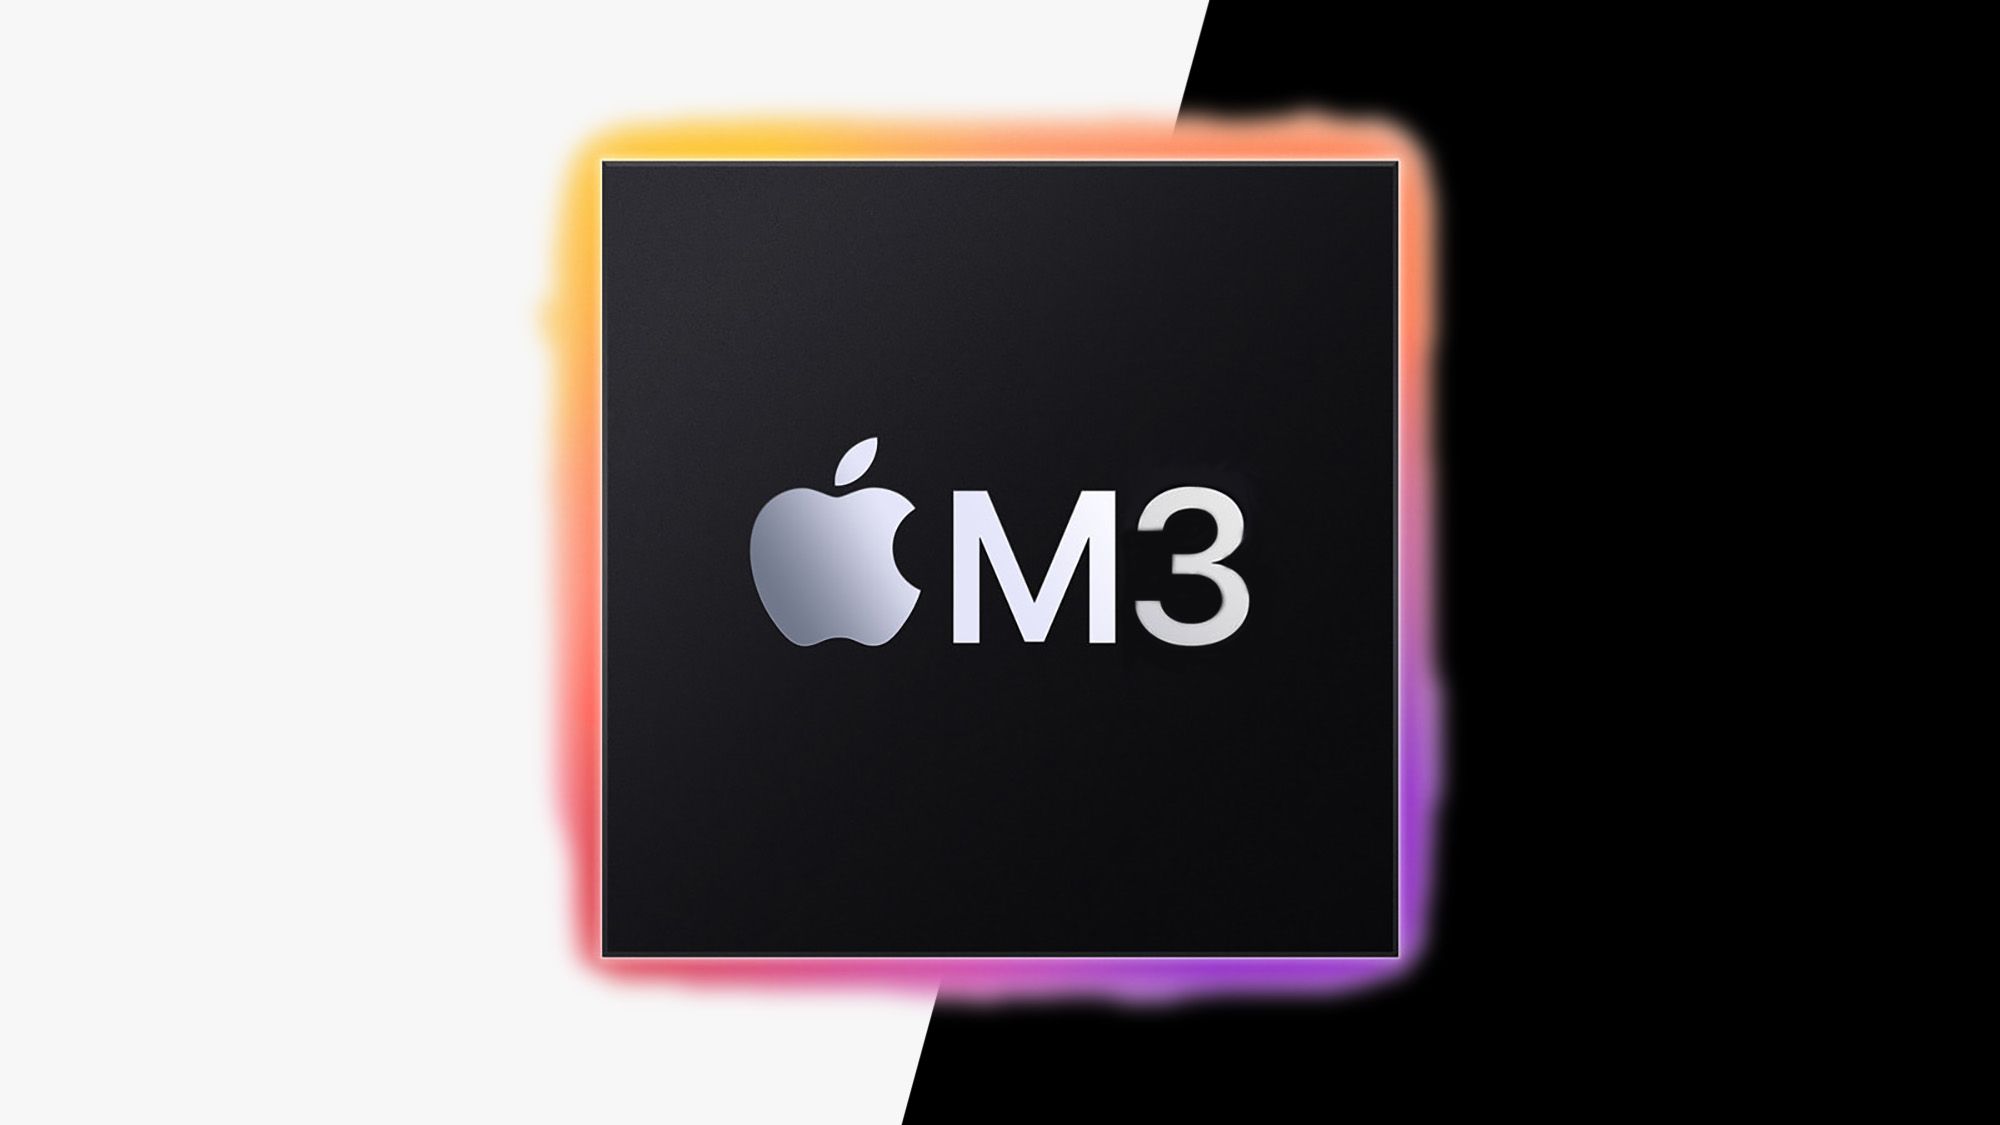 Чип Apple M3: все новости, анонсы и слухи на данный момент